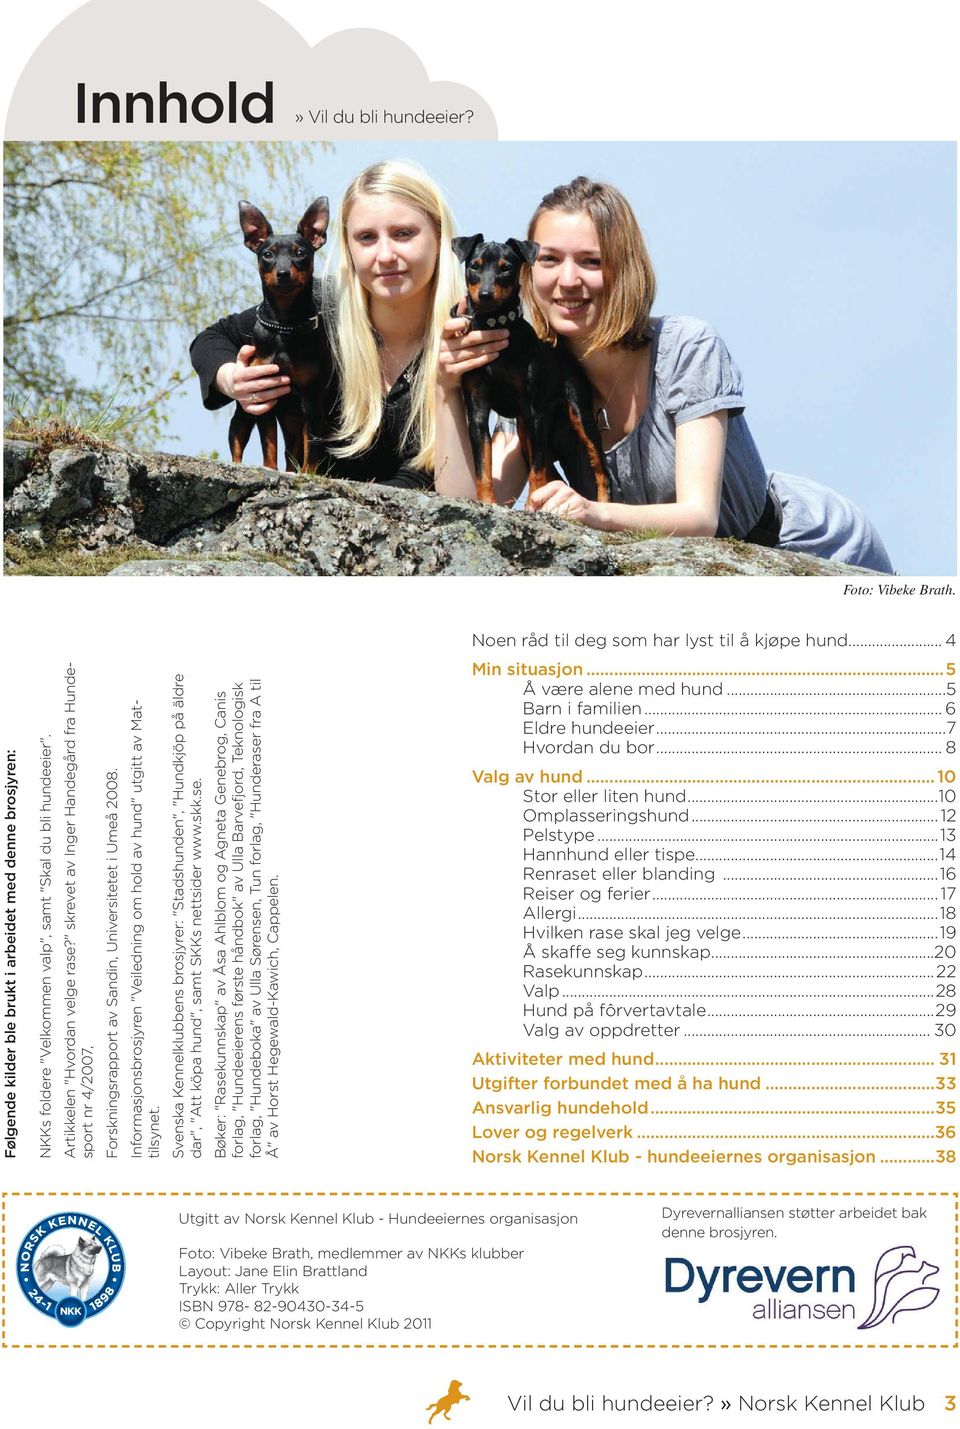 Informasjonsbrosjyren "Veiledning om hold av hund" utgitt av Mattilsynet. Svenska Kennelklubbens brosjyrer: "Stadshunden", "Hundkjöp på äldre dar", "Att köpa hund", samt SKKs nettsider www.skk.se.